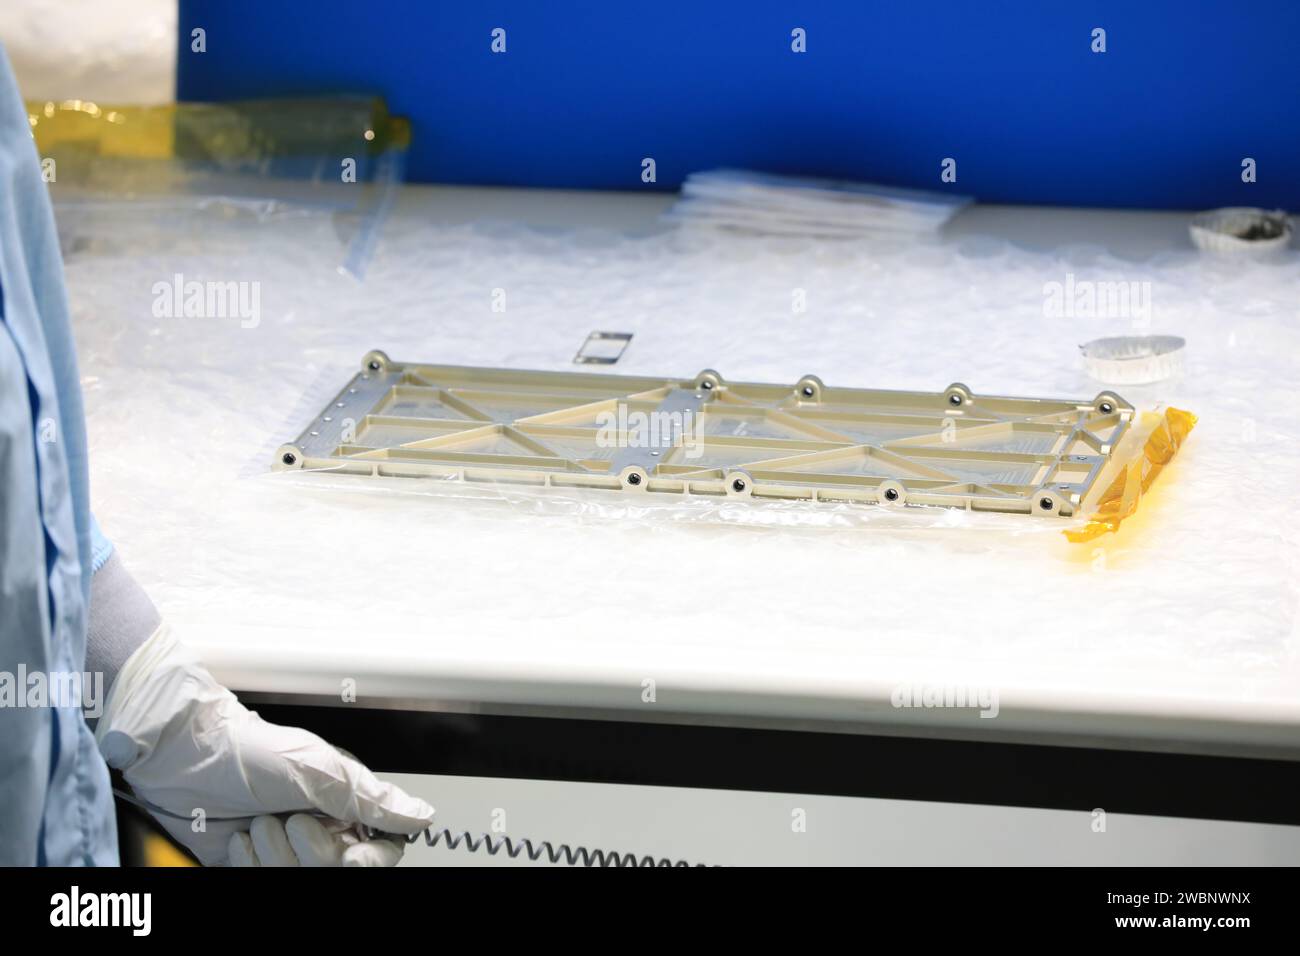 Ingenieure und Techniker des Kennedy Space Center der NASA in Florida haben den Strahler des Massenspektrometers Observing Lunar Operations (MSolo) für die Installation in der Space Station Processing Facility am 25. September 2020 vorbereitet. MSolo wird helfen, die chemische Zusammensetzung von Landeplätzen auf dem Mond zu analysieren und Wasser auf der Mondoberfläche zu untersuchen. Der Kühler trägt dazu bei, die Temperatur des Geräts bei extremer Hitze und Kälte stabil zu halten. MSolo Instruments soll auf mehreren Robotermissionen im Rahmen der Commercial Lunar Payload Services (CLPS) der NASA starten Stockfoto